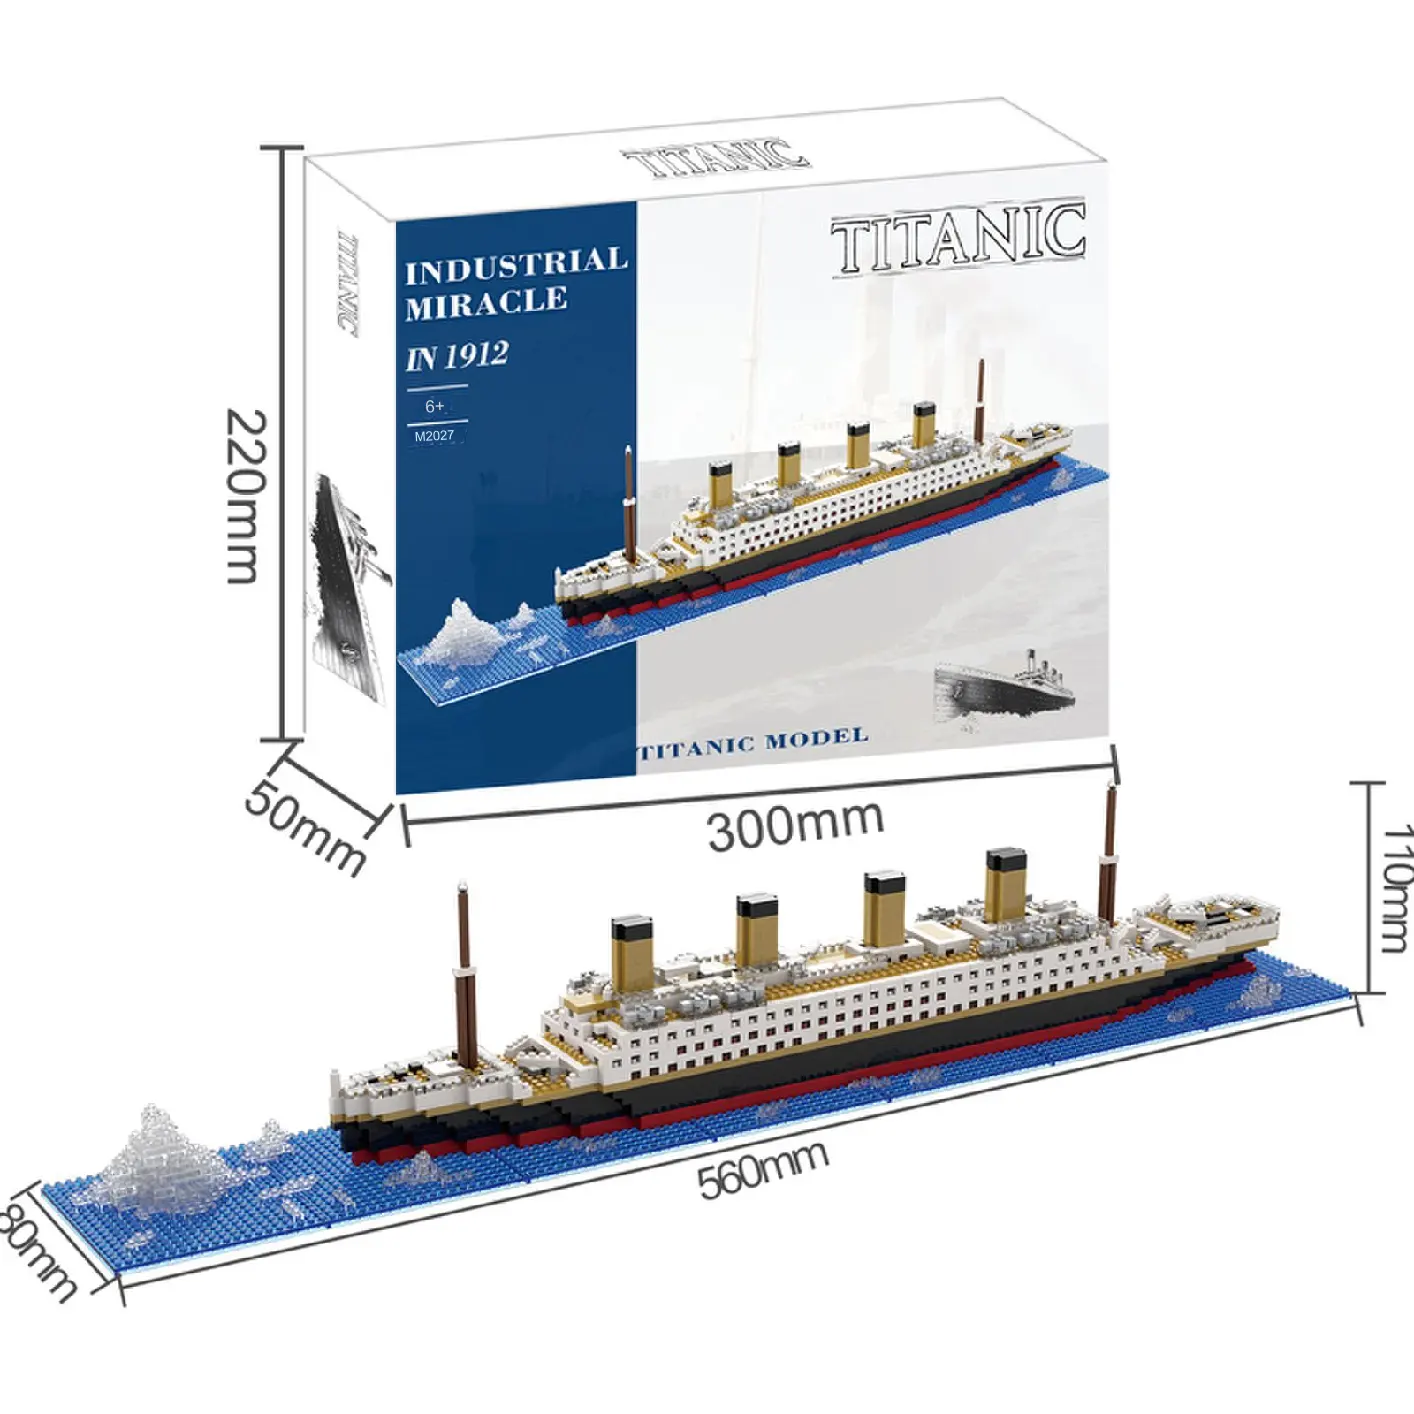 Explotando Iceberg Titanic bloques de construcción construir juguete gigante niño y niña beneficio inteligencia crucero modelo